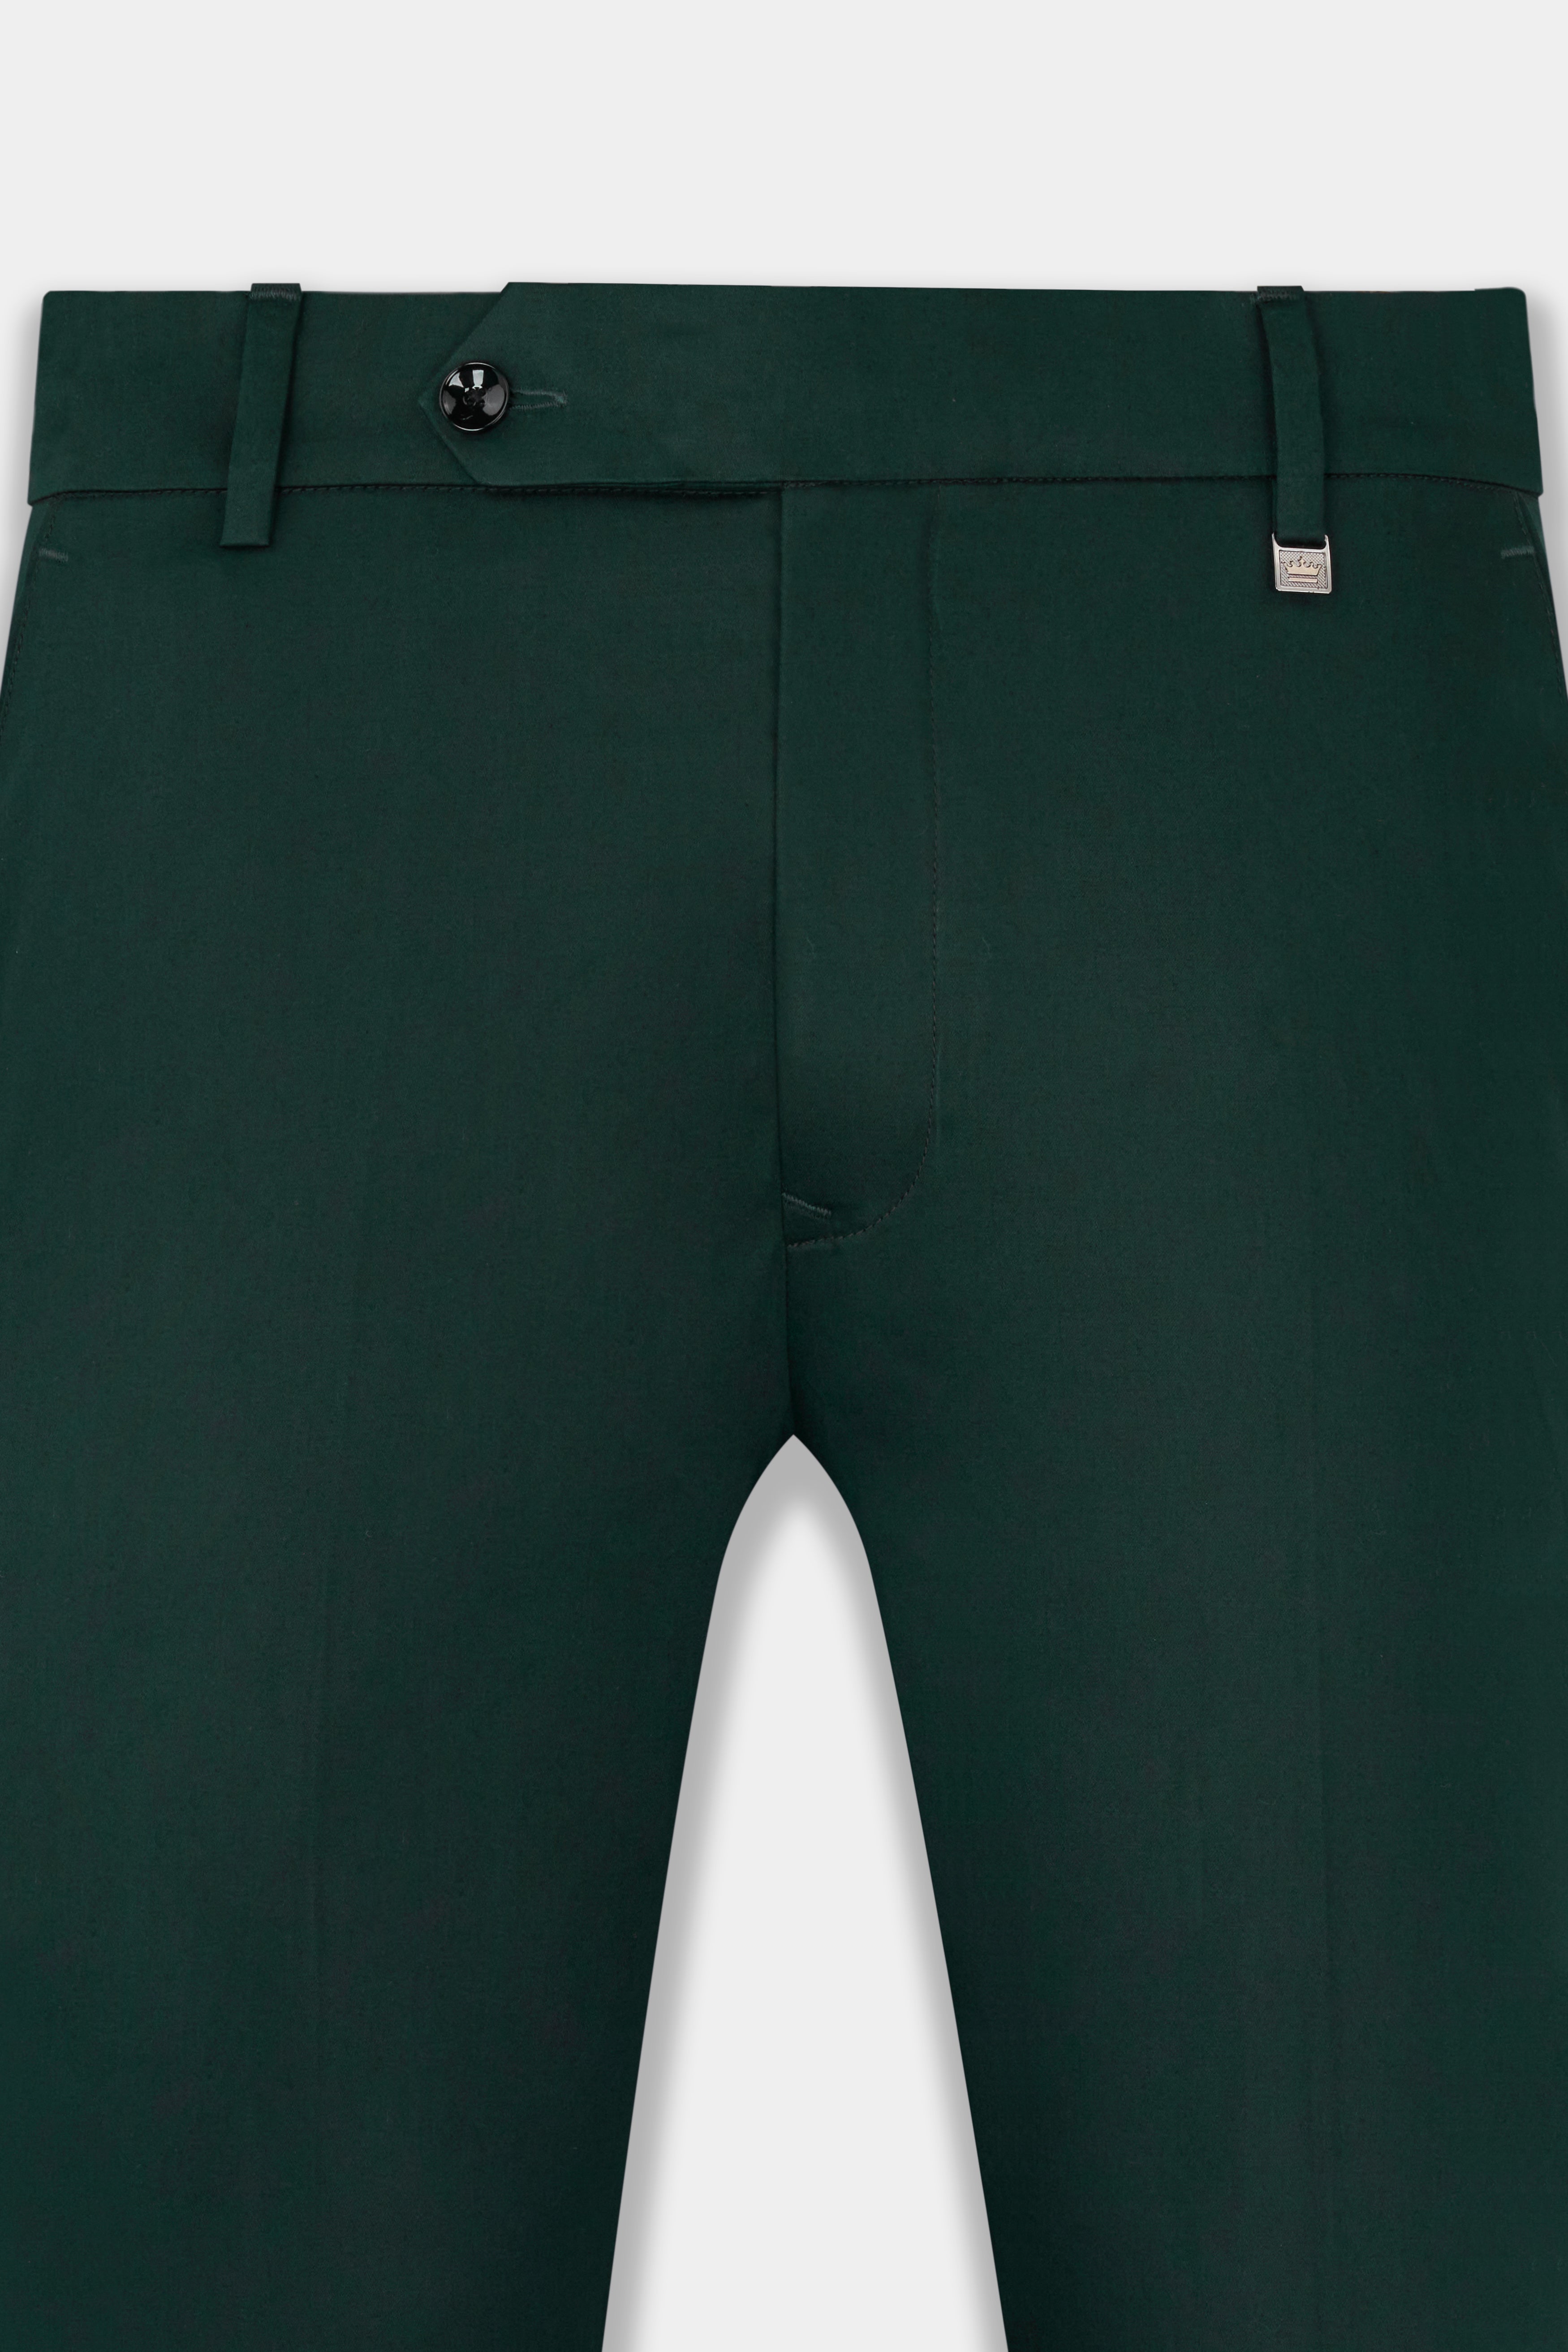 Dark Slate Green Premium Cotton Pant T2739-28, T2739-30, T2739-32, T2739-34, T2739-36, T2739-38, T2739-40, T2739-42, T2739-44